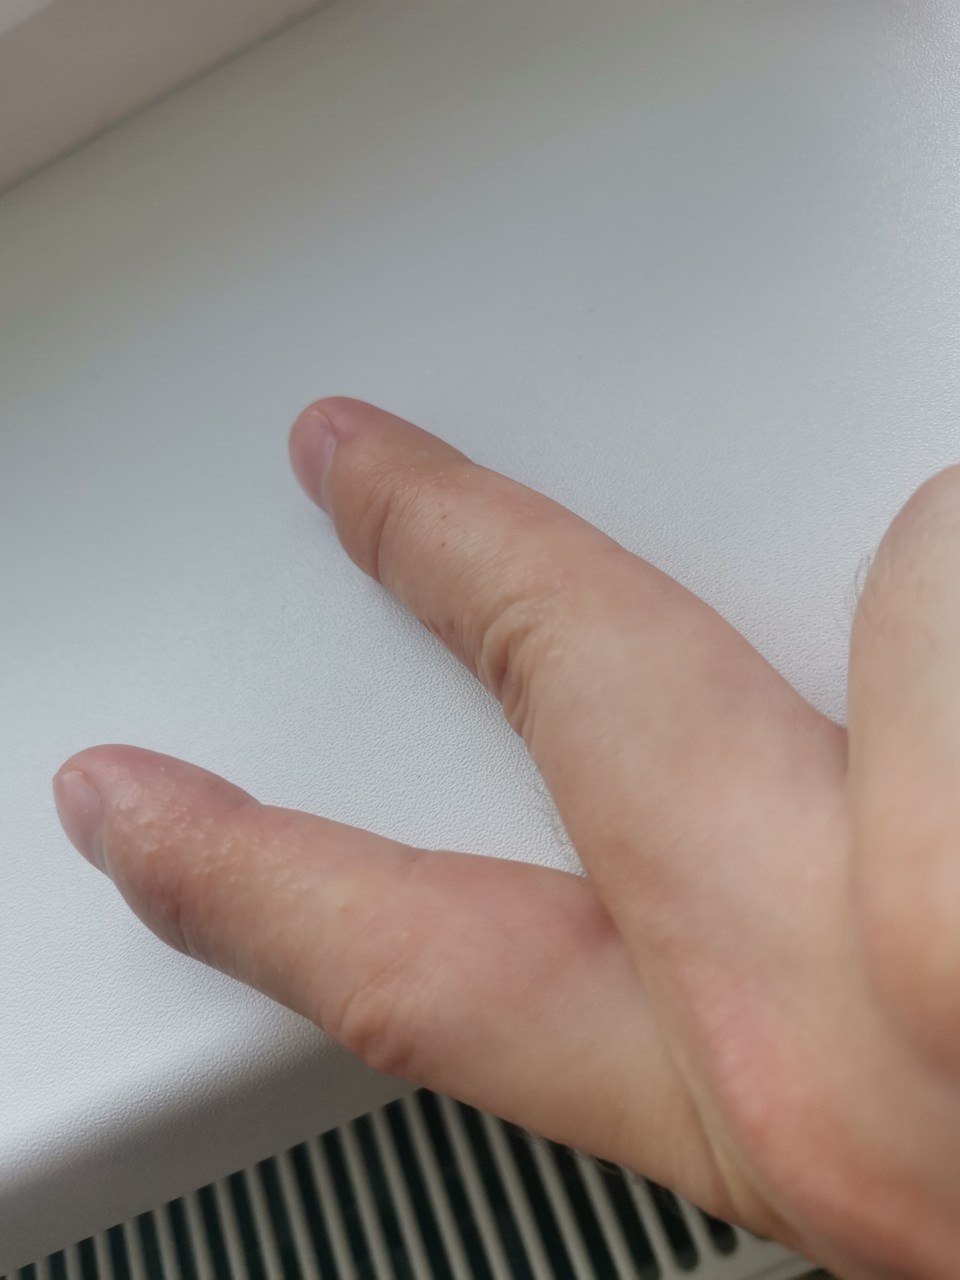 грибок между пальцев руки фото